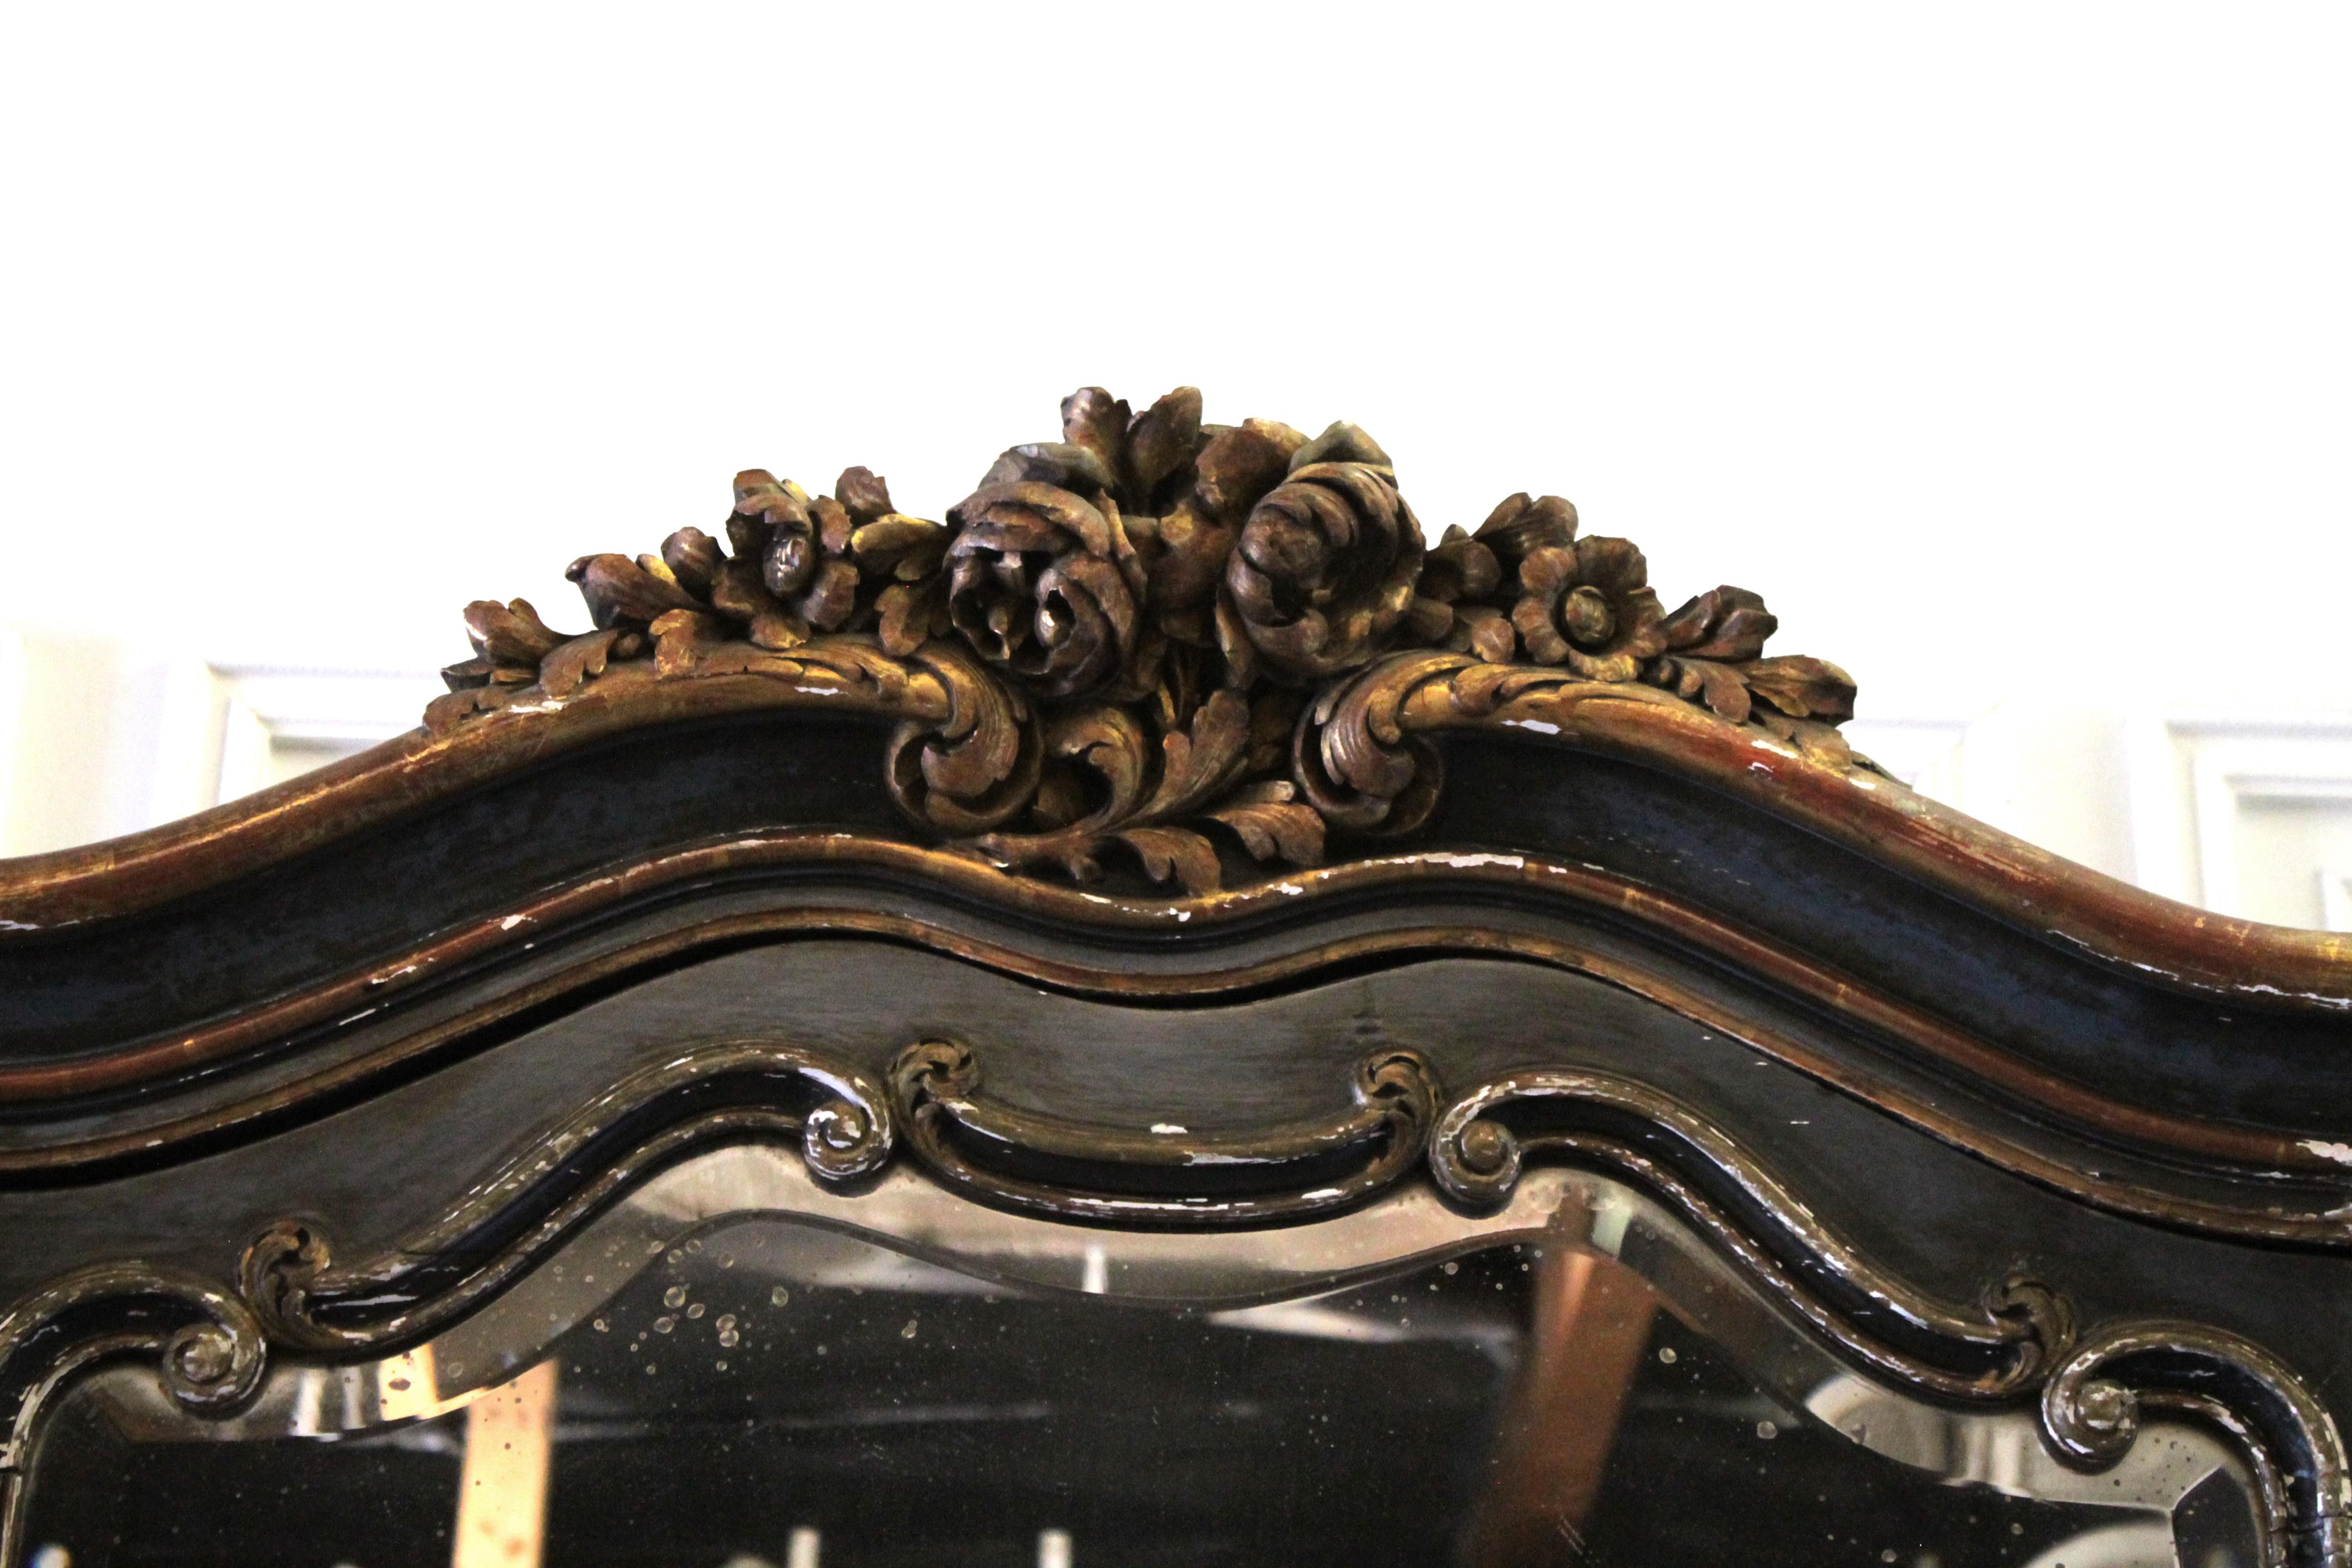 armoire française polychromée de style Louis XV du 19ème siècle
de section demi-cartouche ; le fronton arqué et mouluré est sculpté d'acanthes et de roses enroulées ; la porte unique est garnie d'un miroir de belle forme et entièrement biseauté.